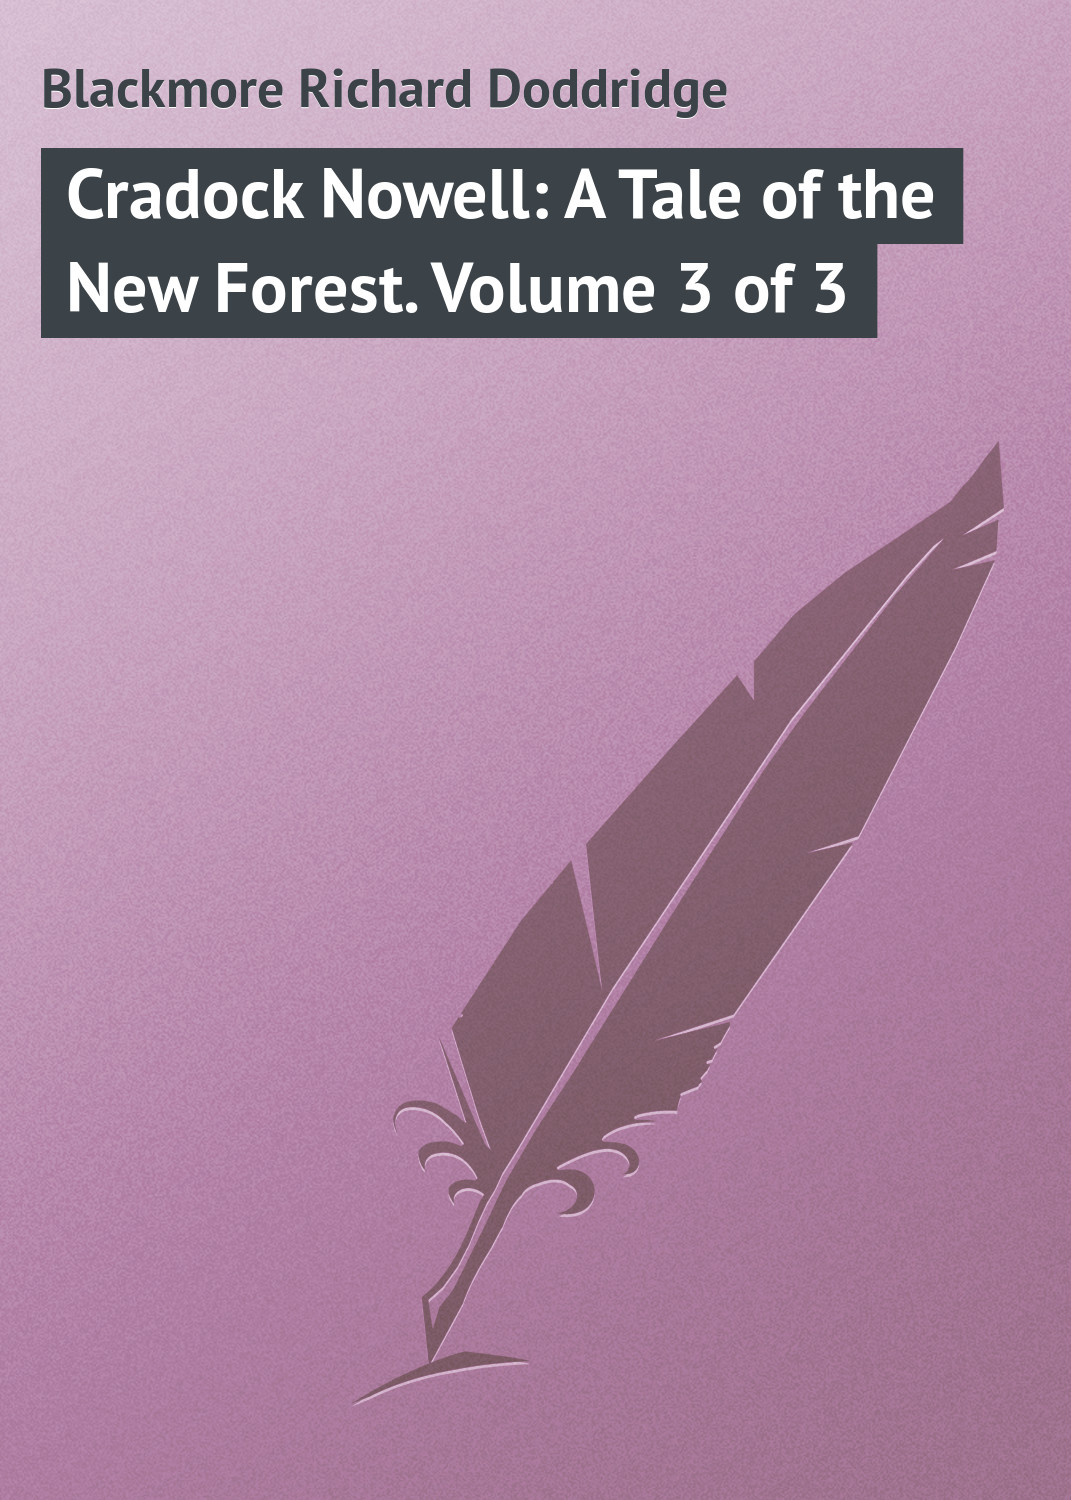 Книга Cradock Nowell: A Tale of the New Forest. Volume 3 of 3 из серии , созданная Richard Blackmore, может относится к жанру Зарубежная классика. Стоимость электронной книги Cradock Nowell: A Tale of the New Forest. Volume 3 of 3 с идентификатором 23148355 составляет 5.99 руб.